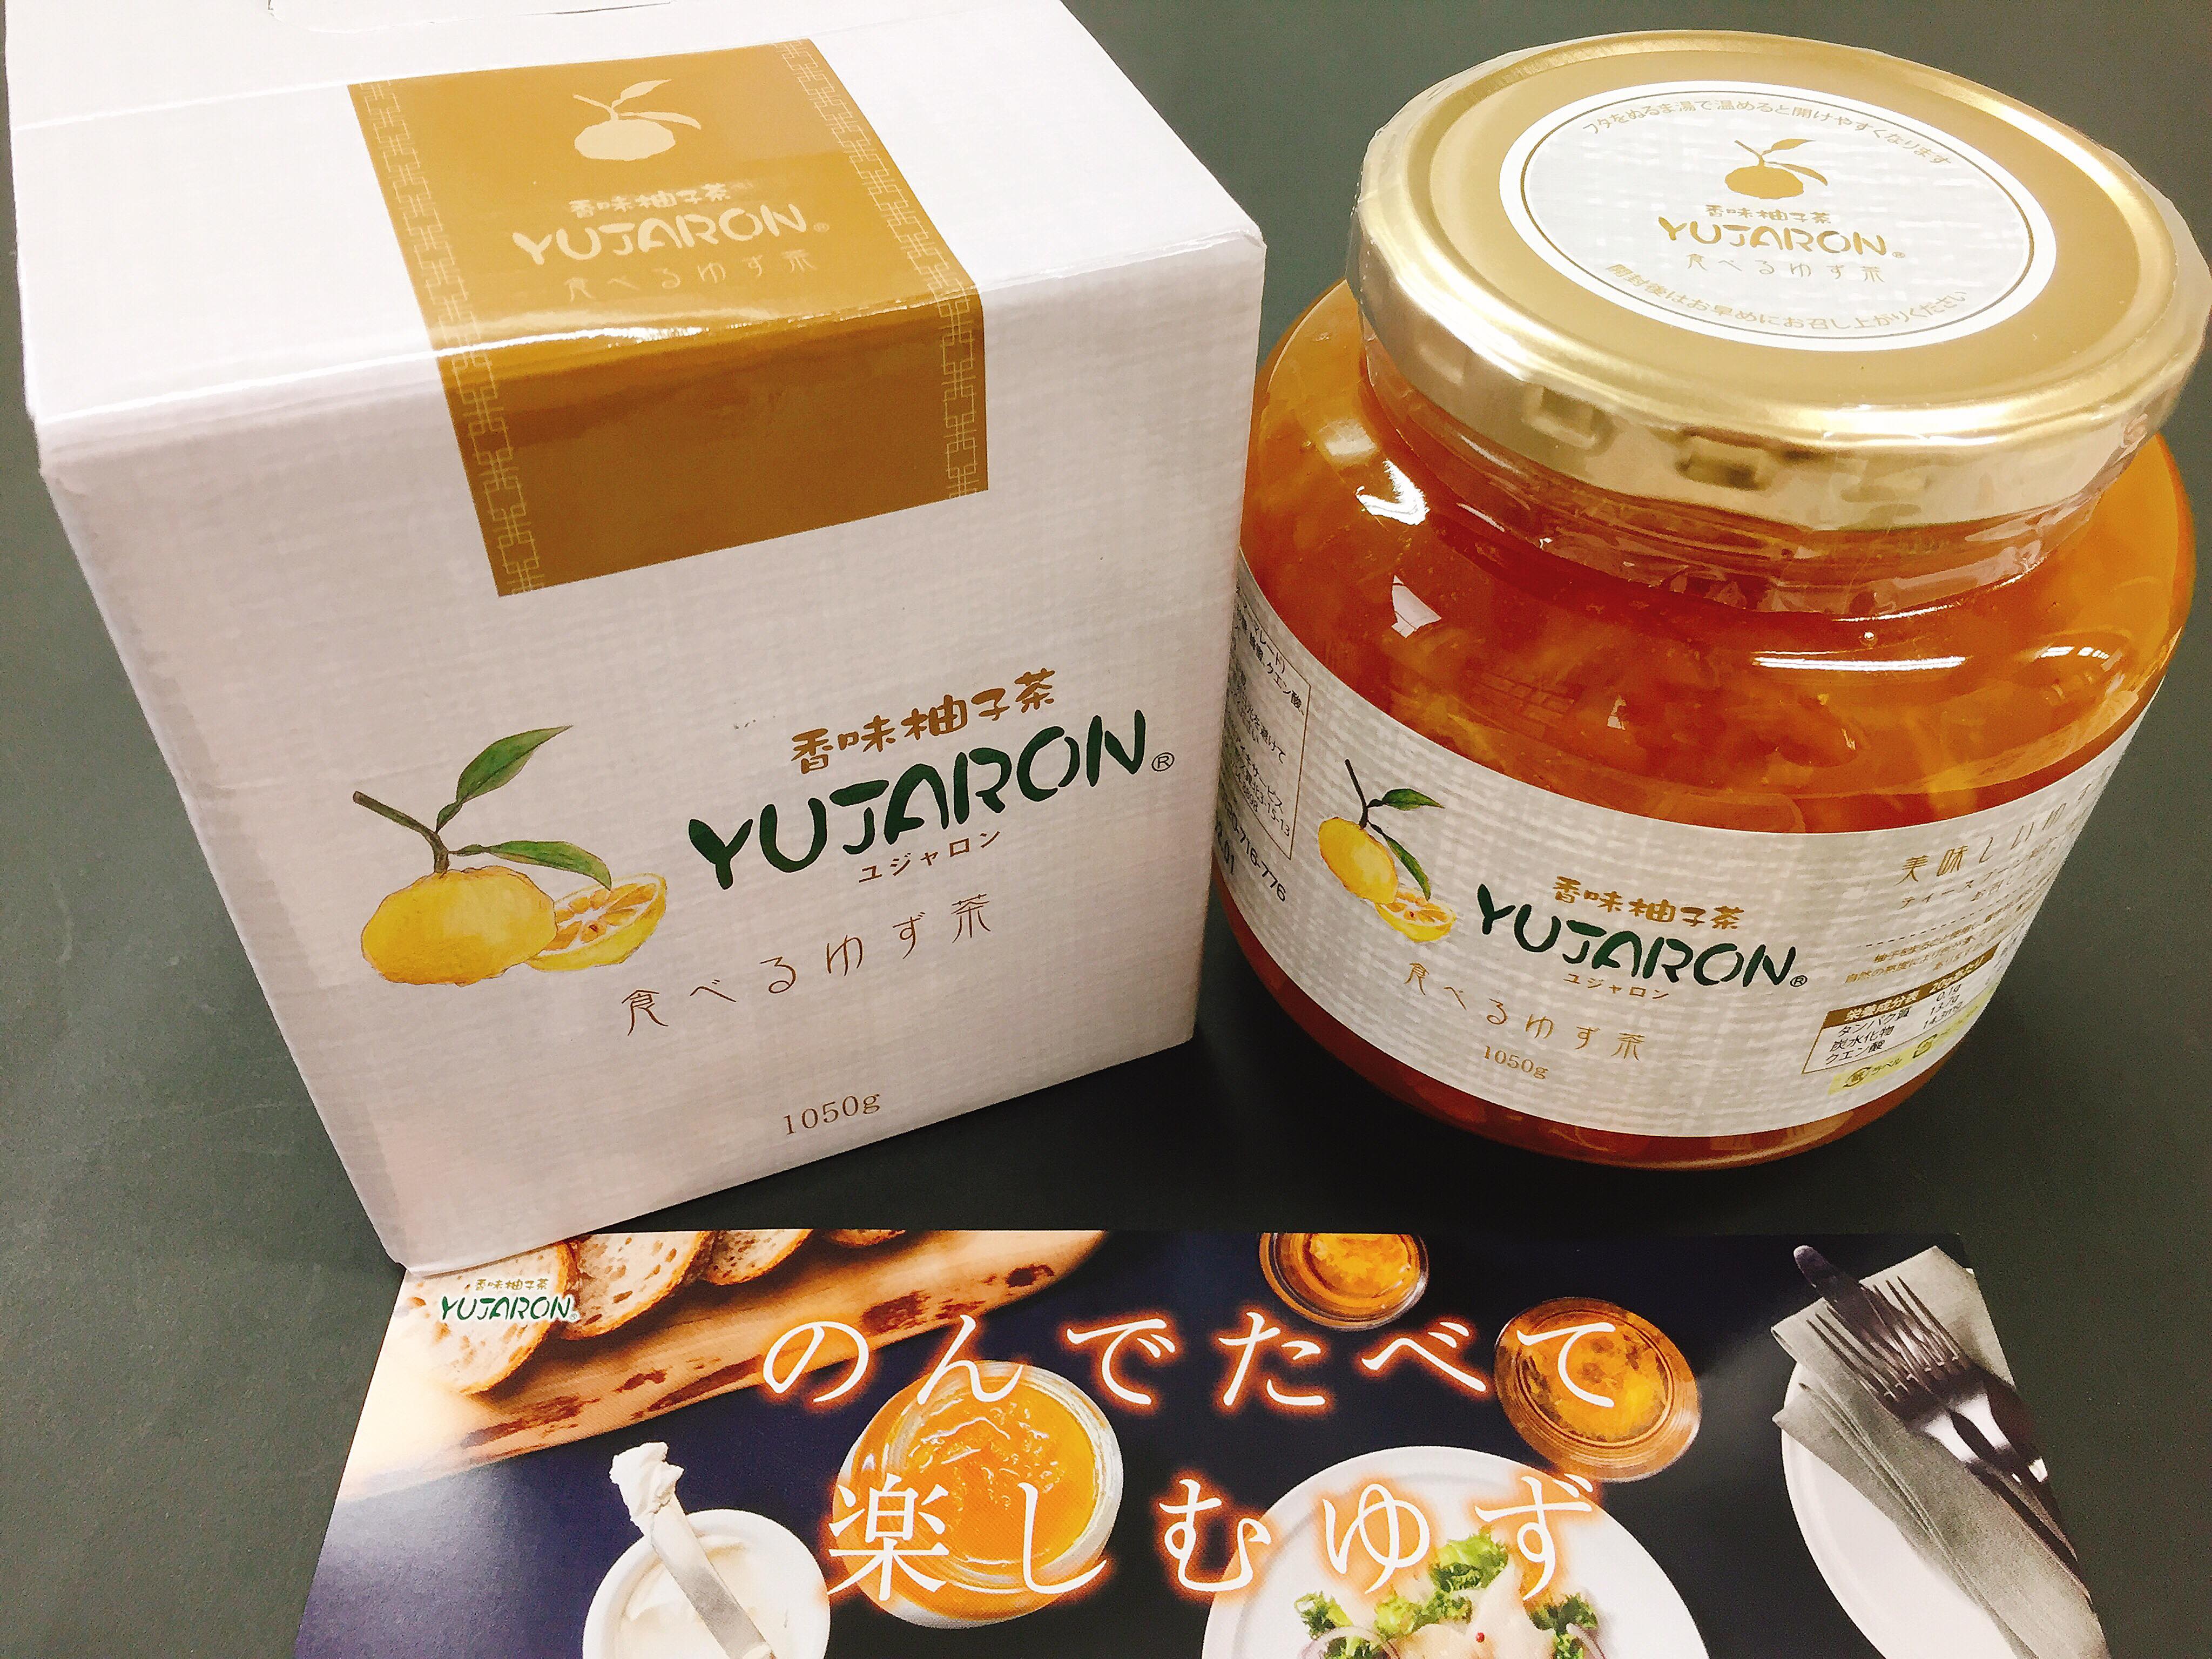 のんでたべて 楽しむゆず 香味柚子茶ユジャロン 和光食材株式会社